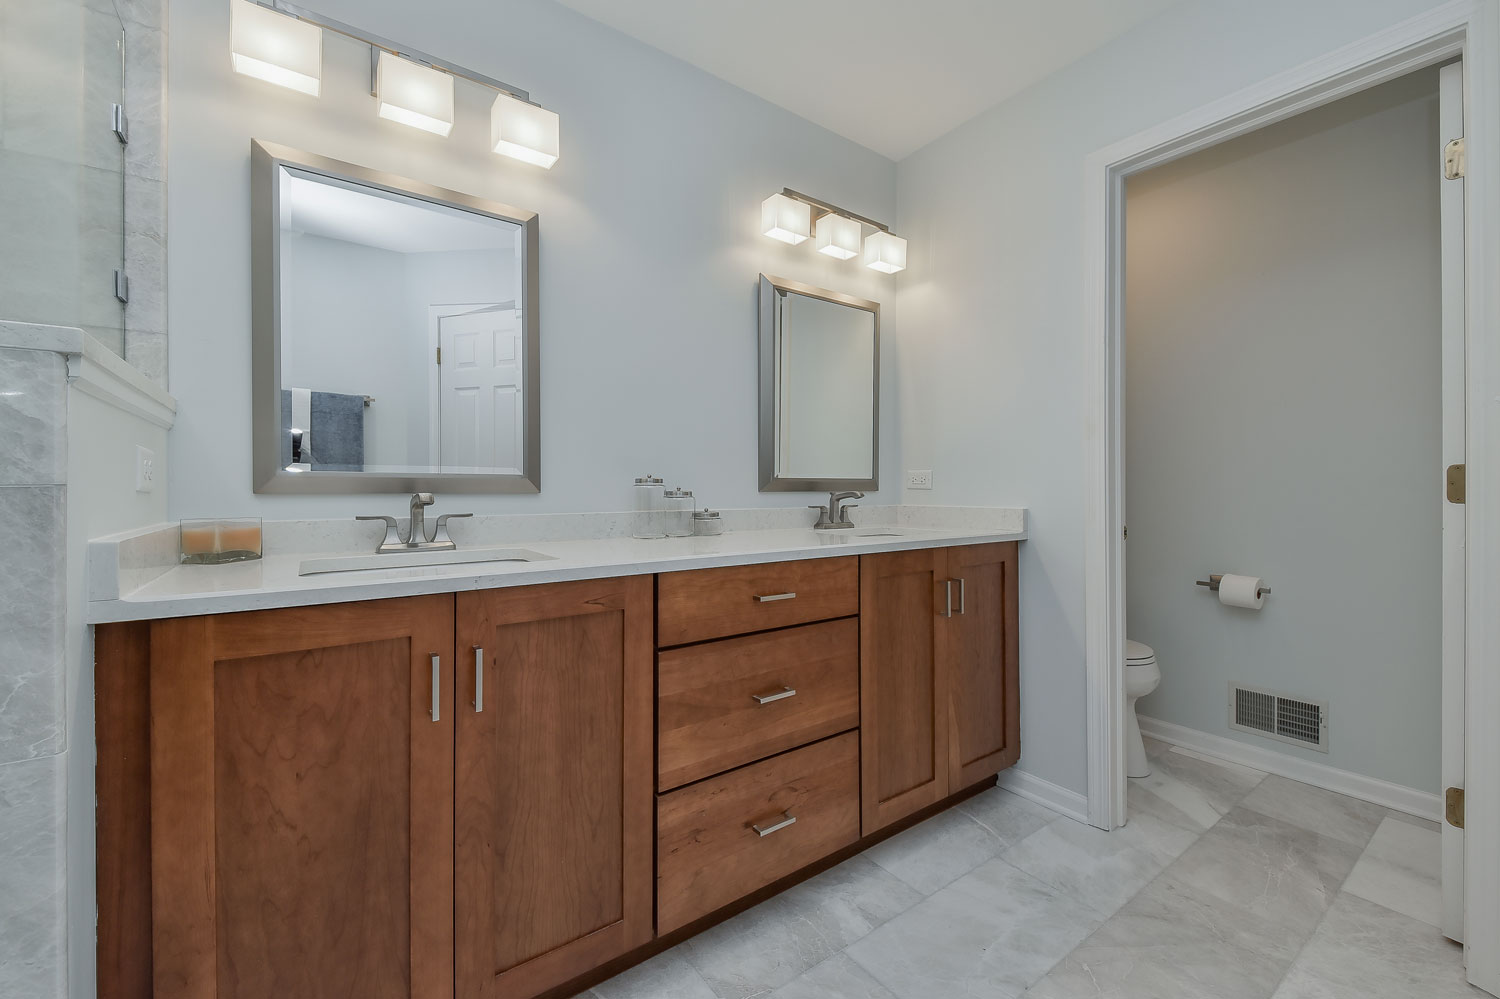 Lisle Master Bathroom Remodel, Quartz, Grey Subway Tile, Walk-in Shower - Sebring Design Build